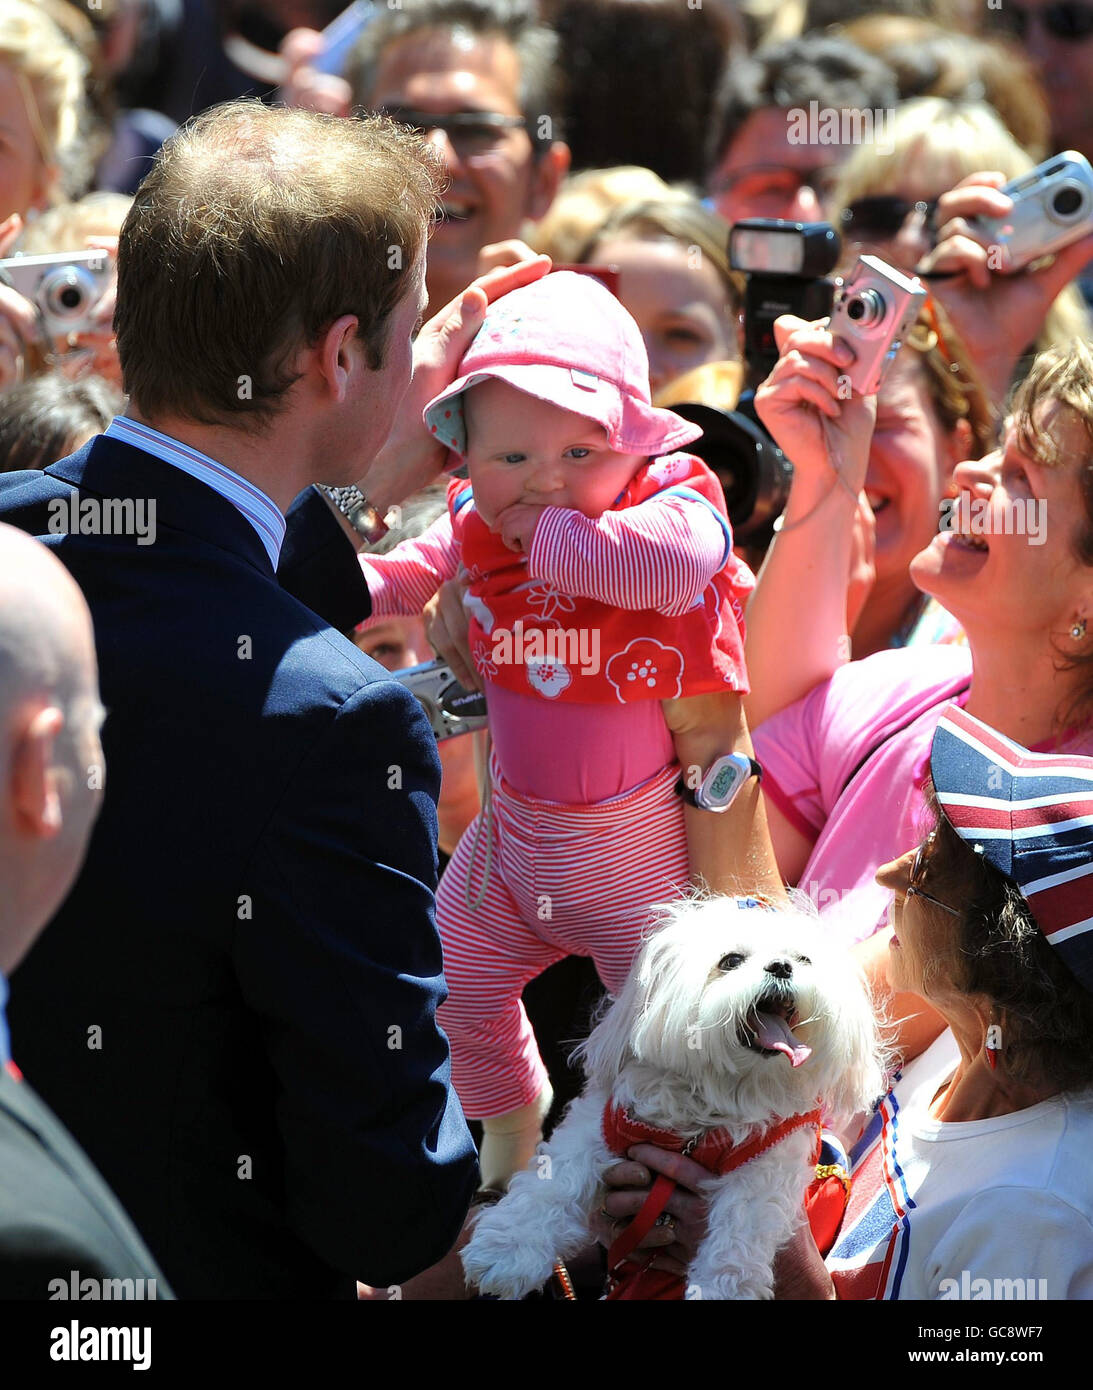 Le Prince William patte un bébé sur la tête lors d'une promenade, après avoir ouvert le nouvel édifice de la Cour suprême à Wellington, en Nouvelle-Zélande. Banque D'Images